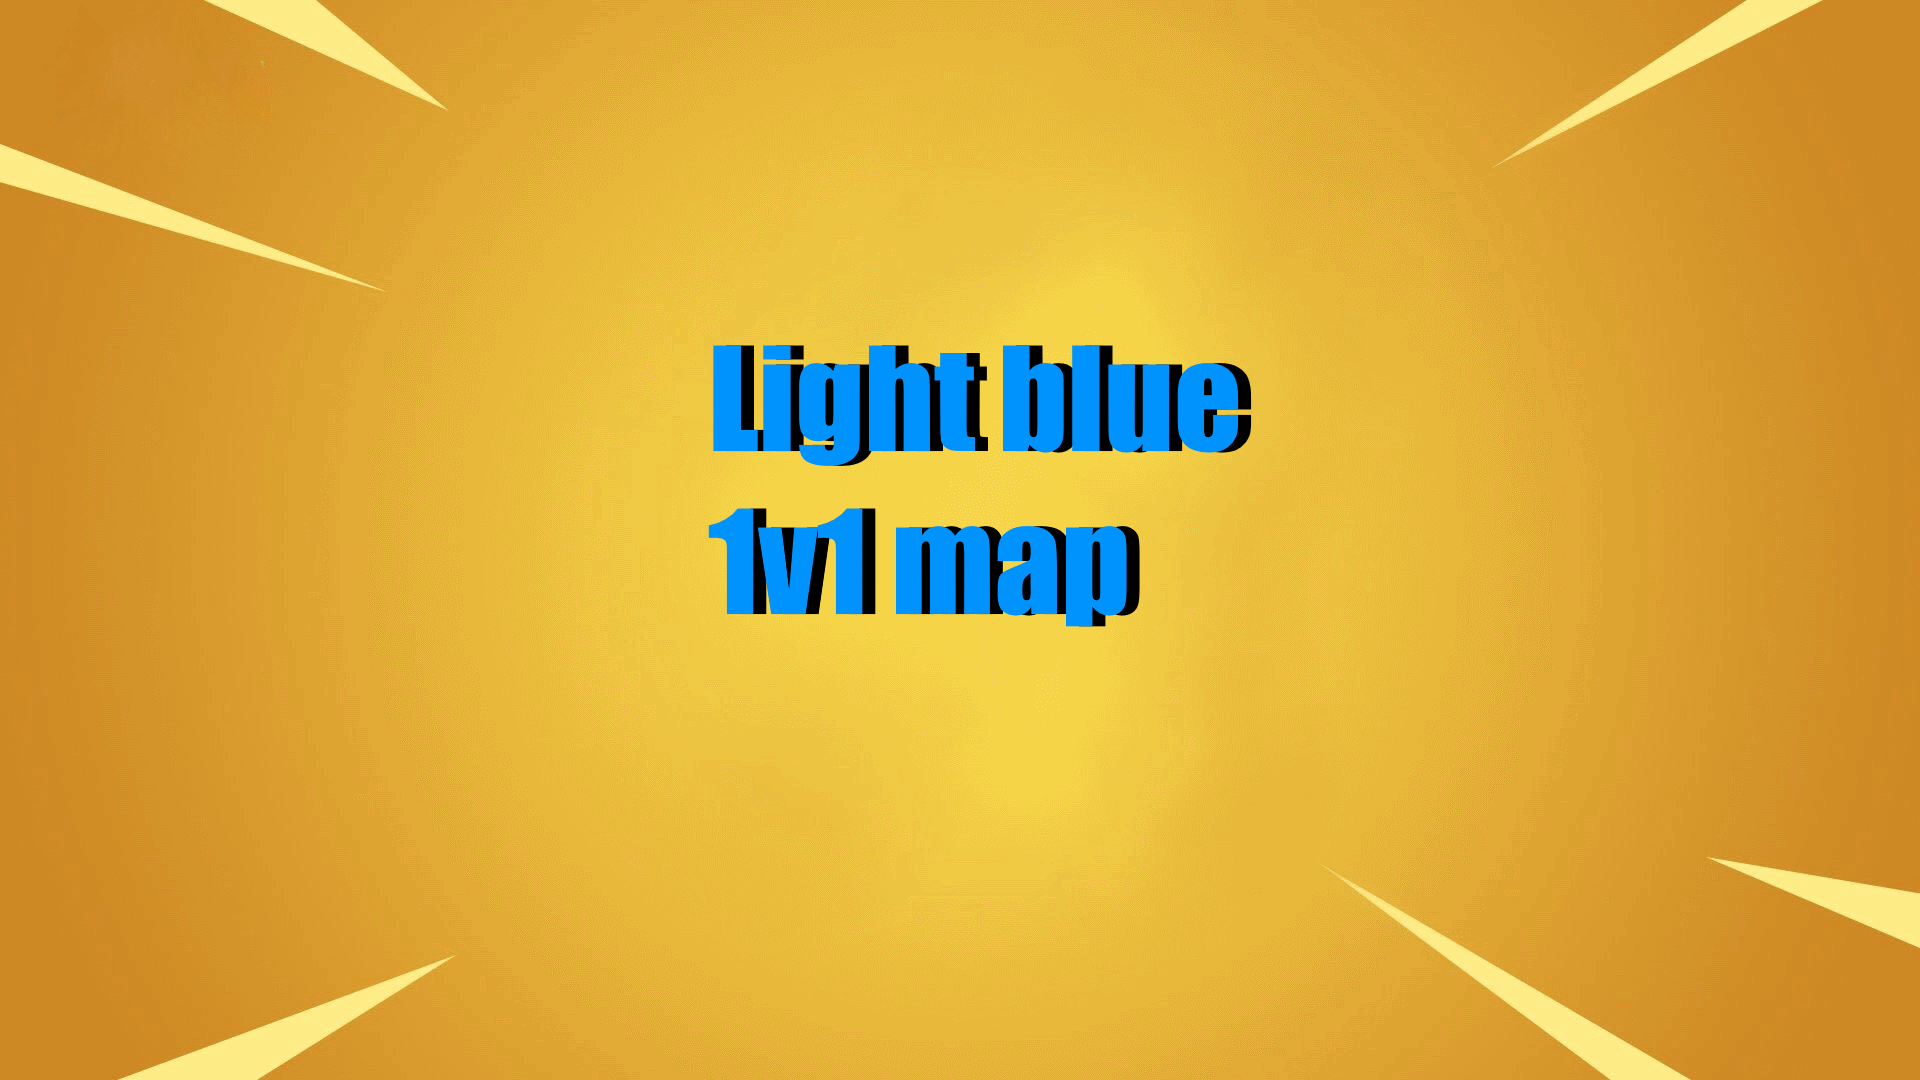 LIGHT BLUE 1V1 MAP